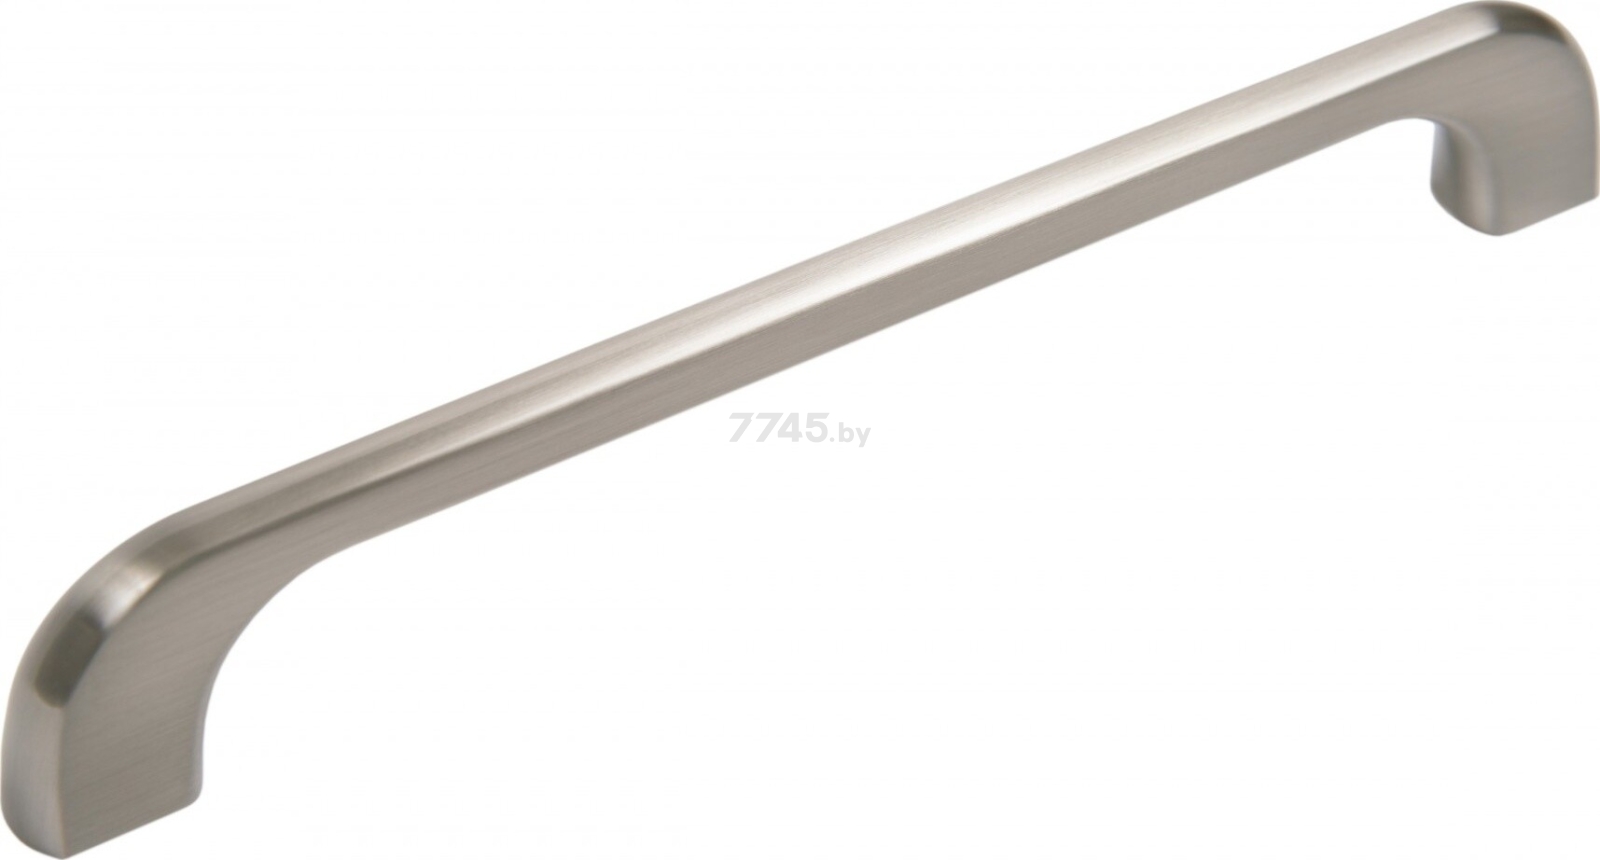 Ручка мебельная скоба BOYARD Jetline RS219BSN.4/160 атласный сатиновый никель